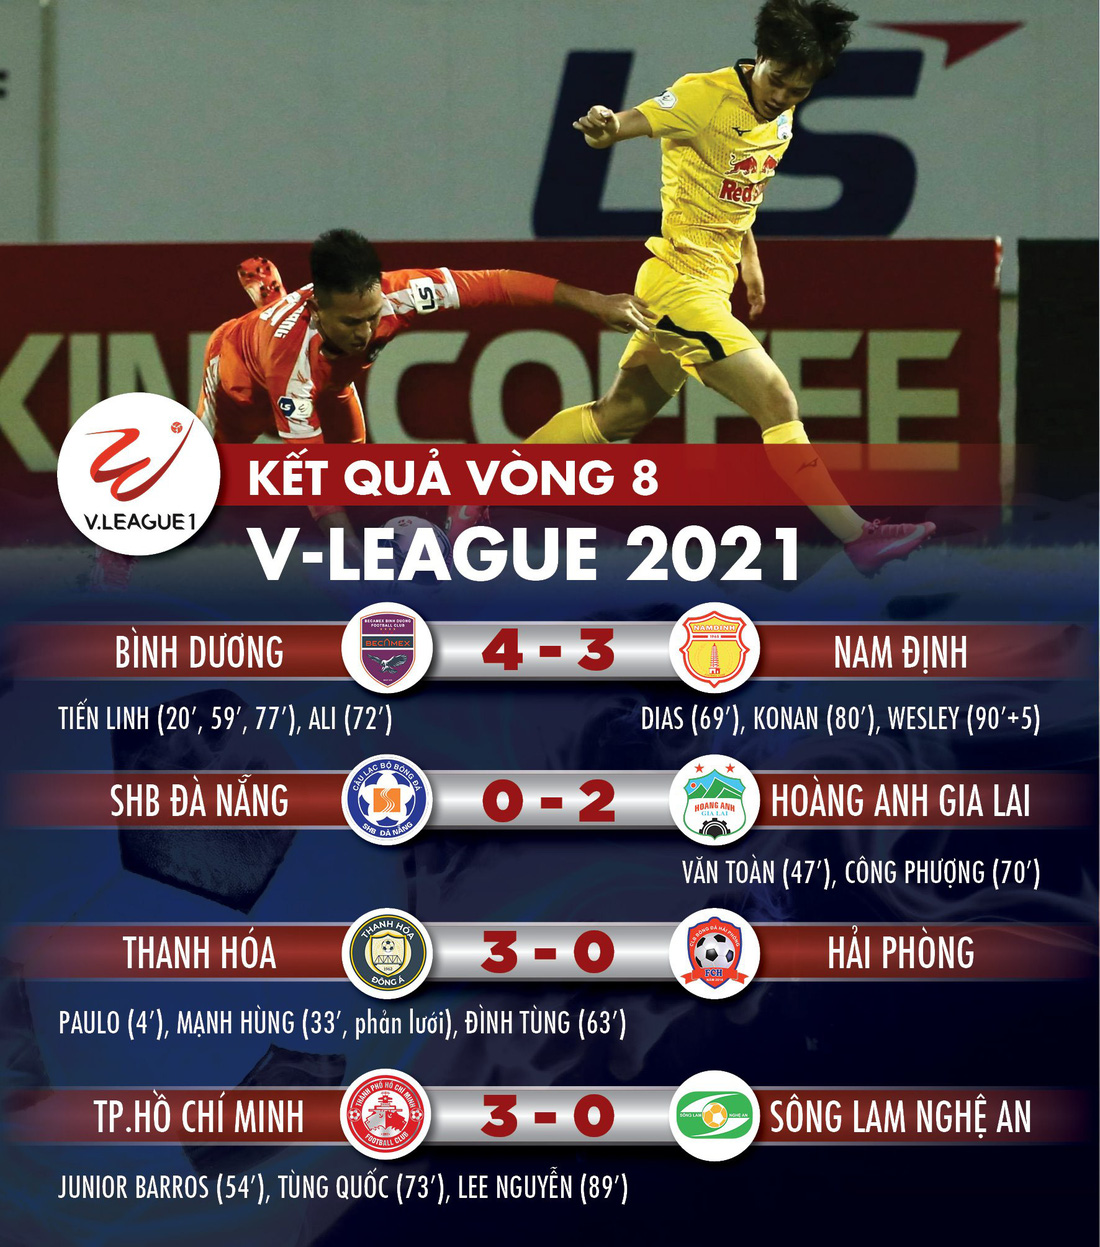 Kết quả, bảng xếp hạng V-League 2021: HAGL số 1, CLB TP.HCM tạm thoát hiểm - Ảnh 1.